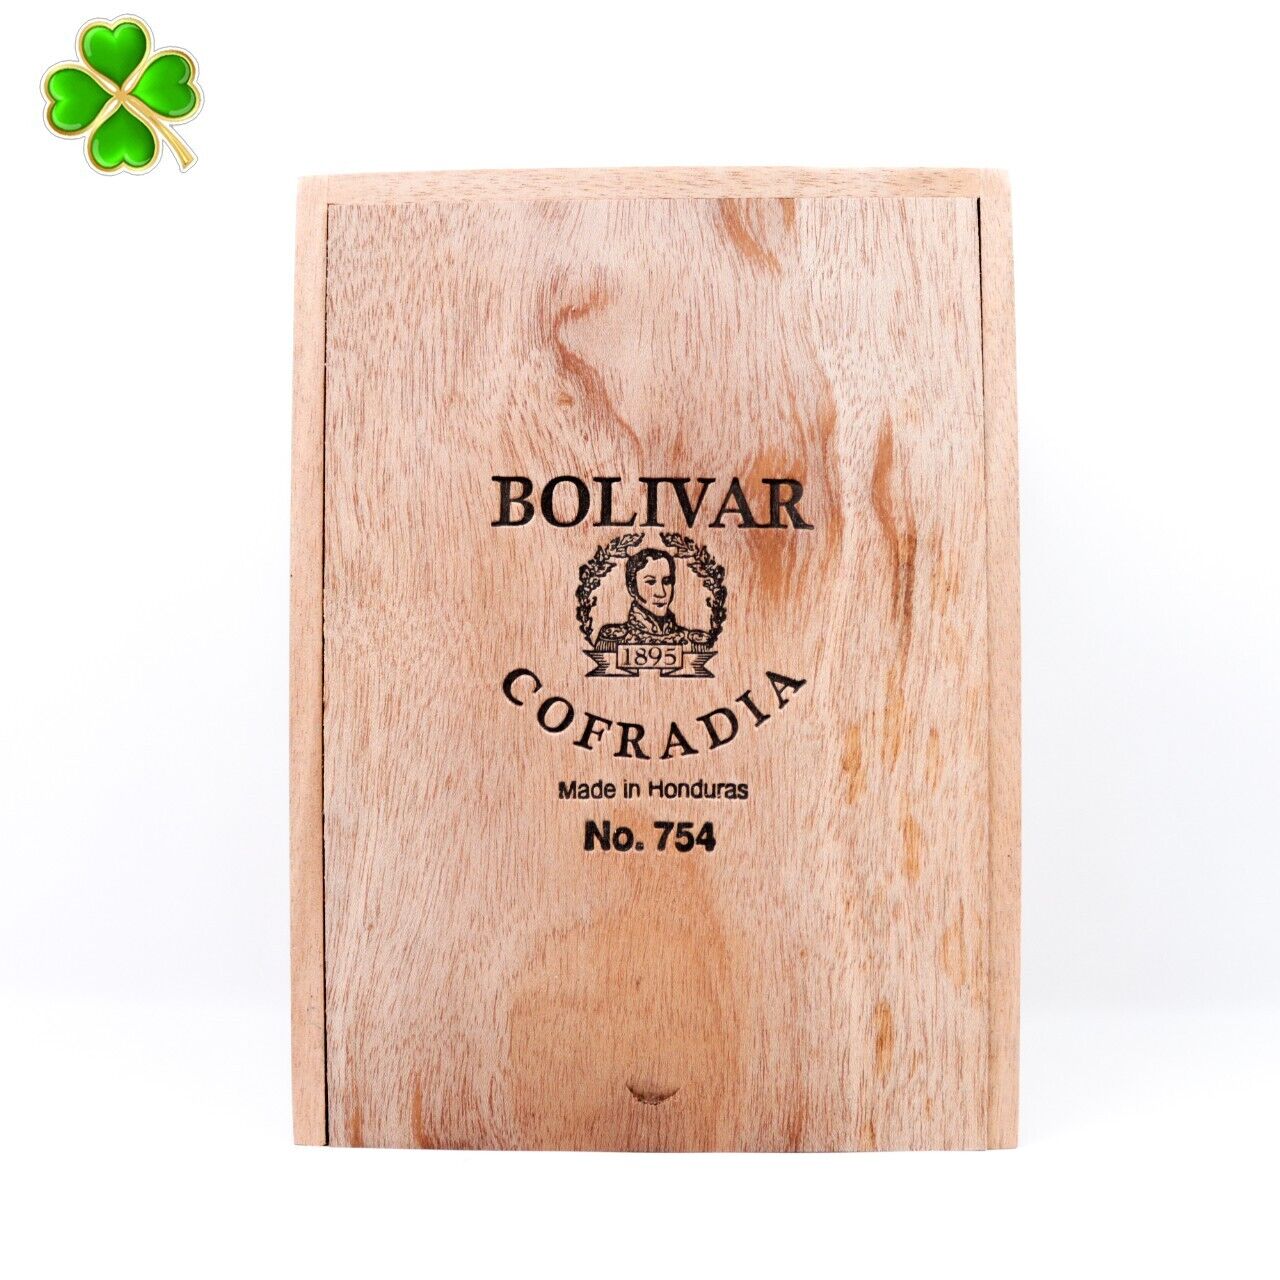 Bolivar Cofradia Gigante 754 Empty Wood Cigar Box 8\